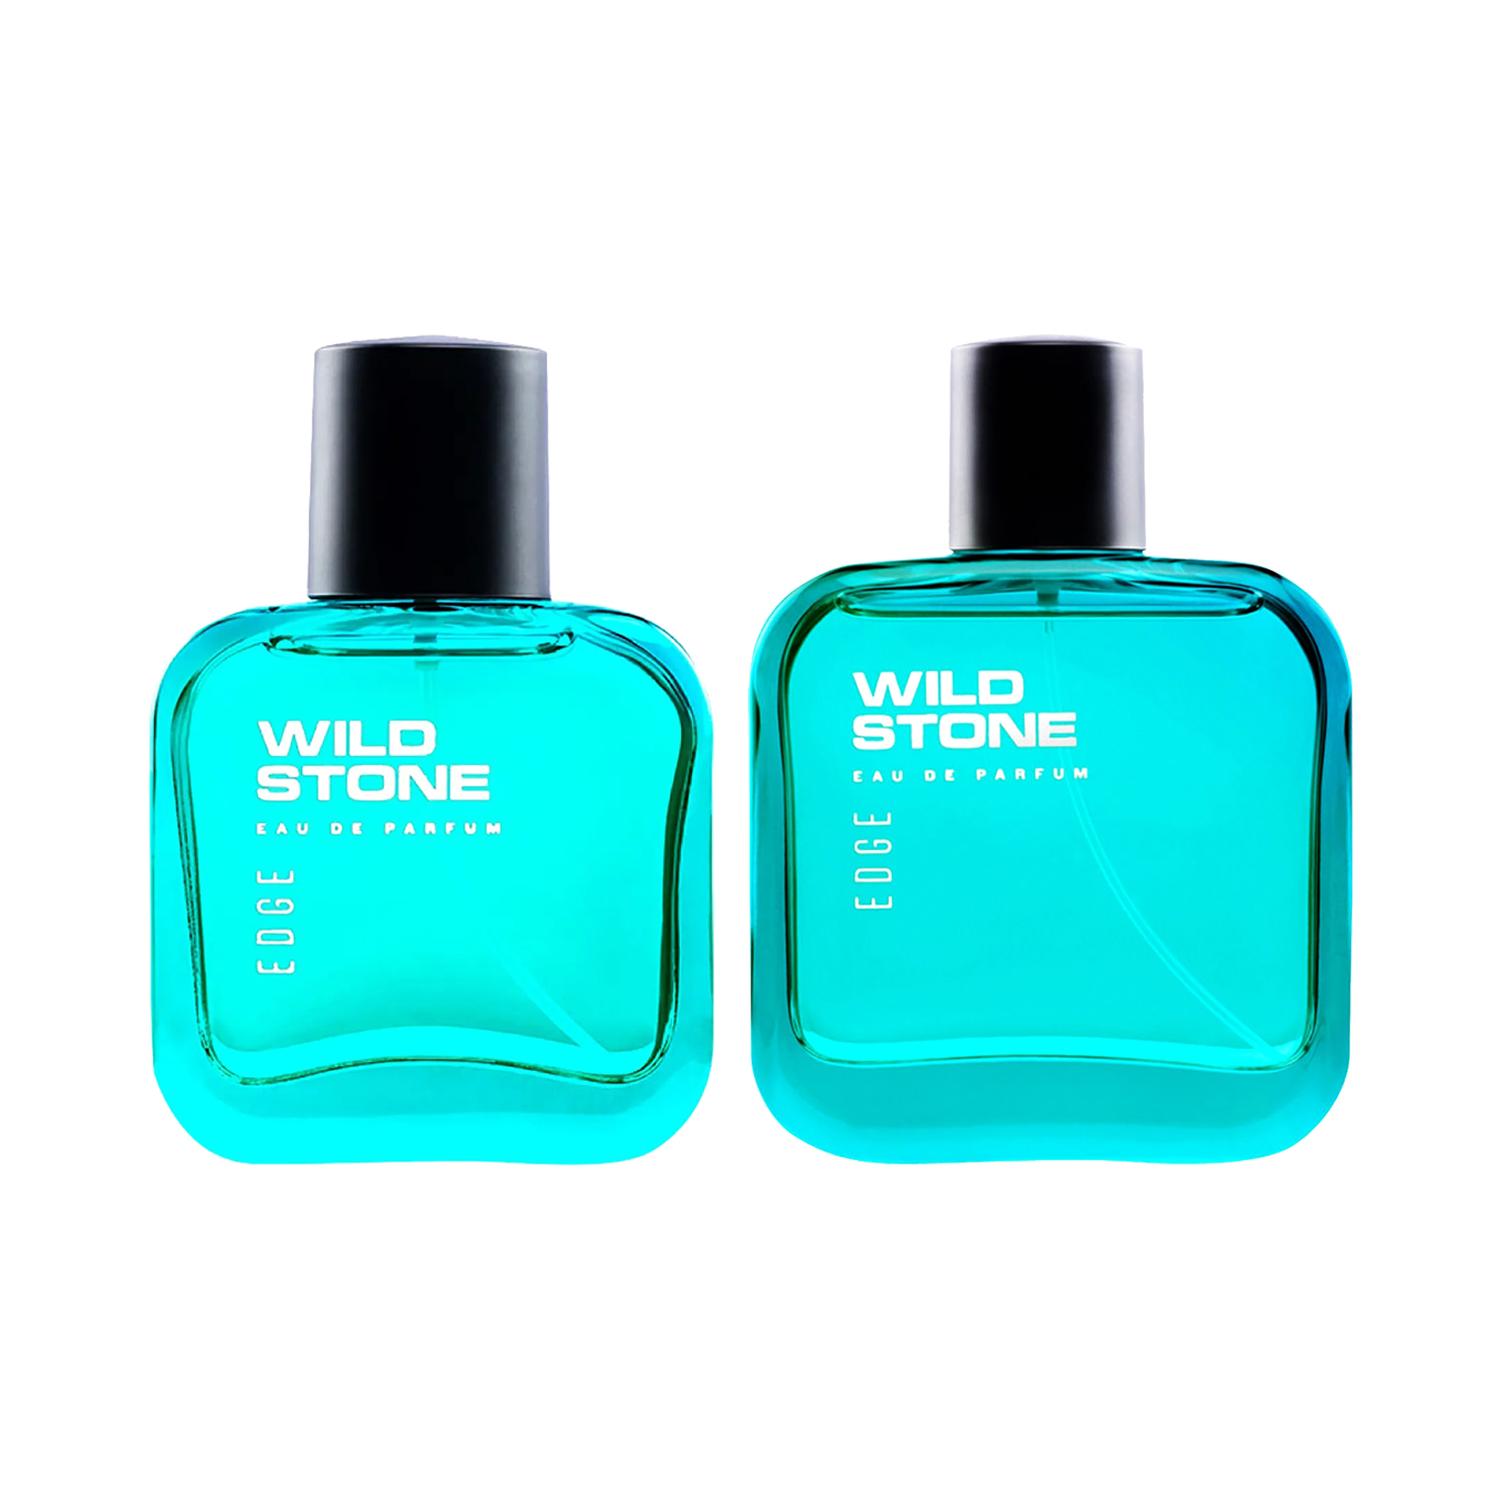 Wild Stone | Wild Stone Edge Spray Perfume (50ml) & Edge Perfume For Men (100ml)